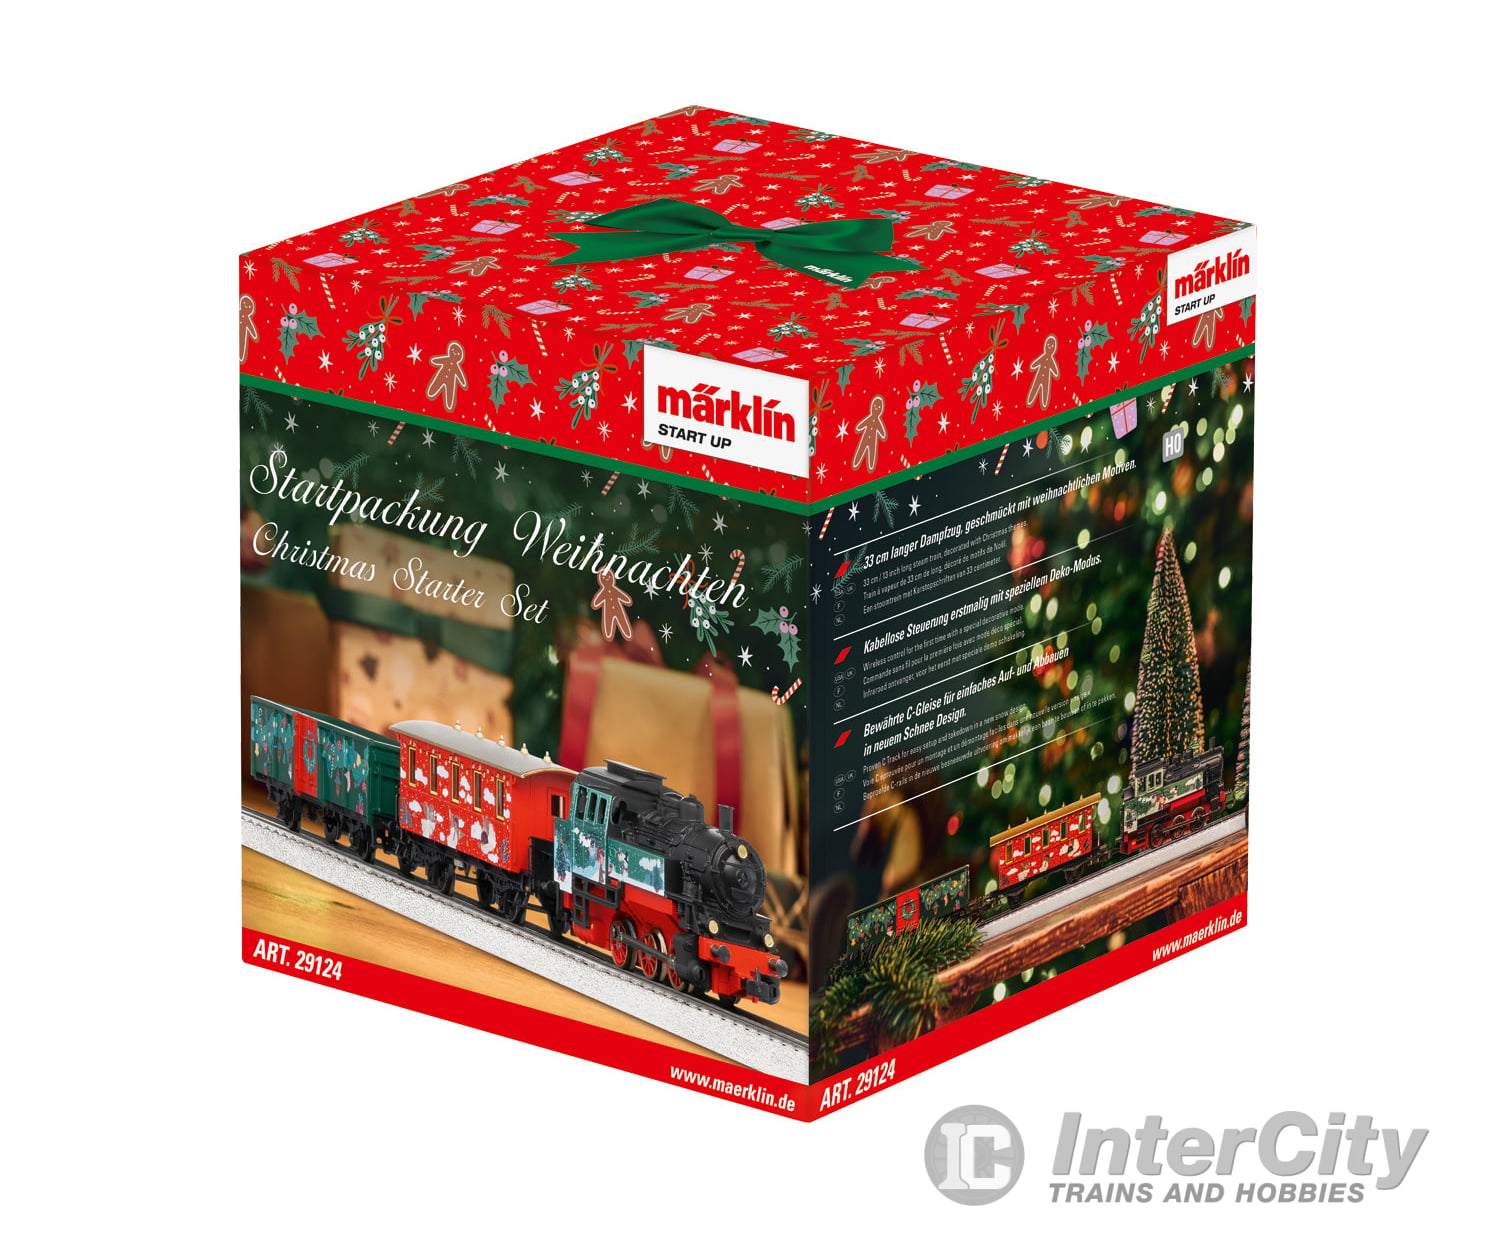 Marklin 29124 Ho Märklin Start Up - Christmas Starter Set & Train Sets